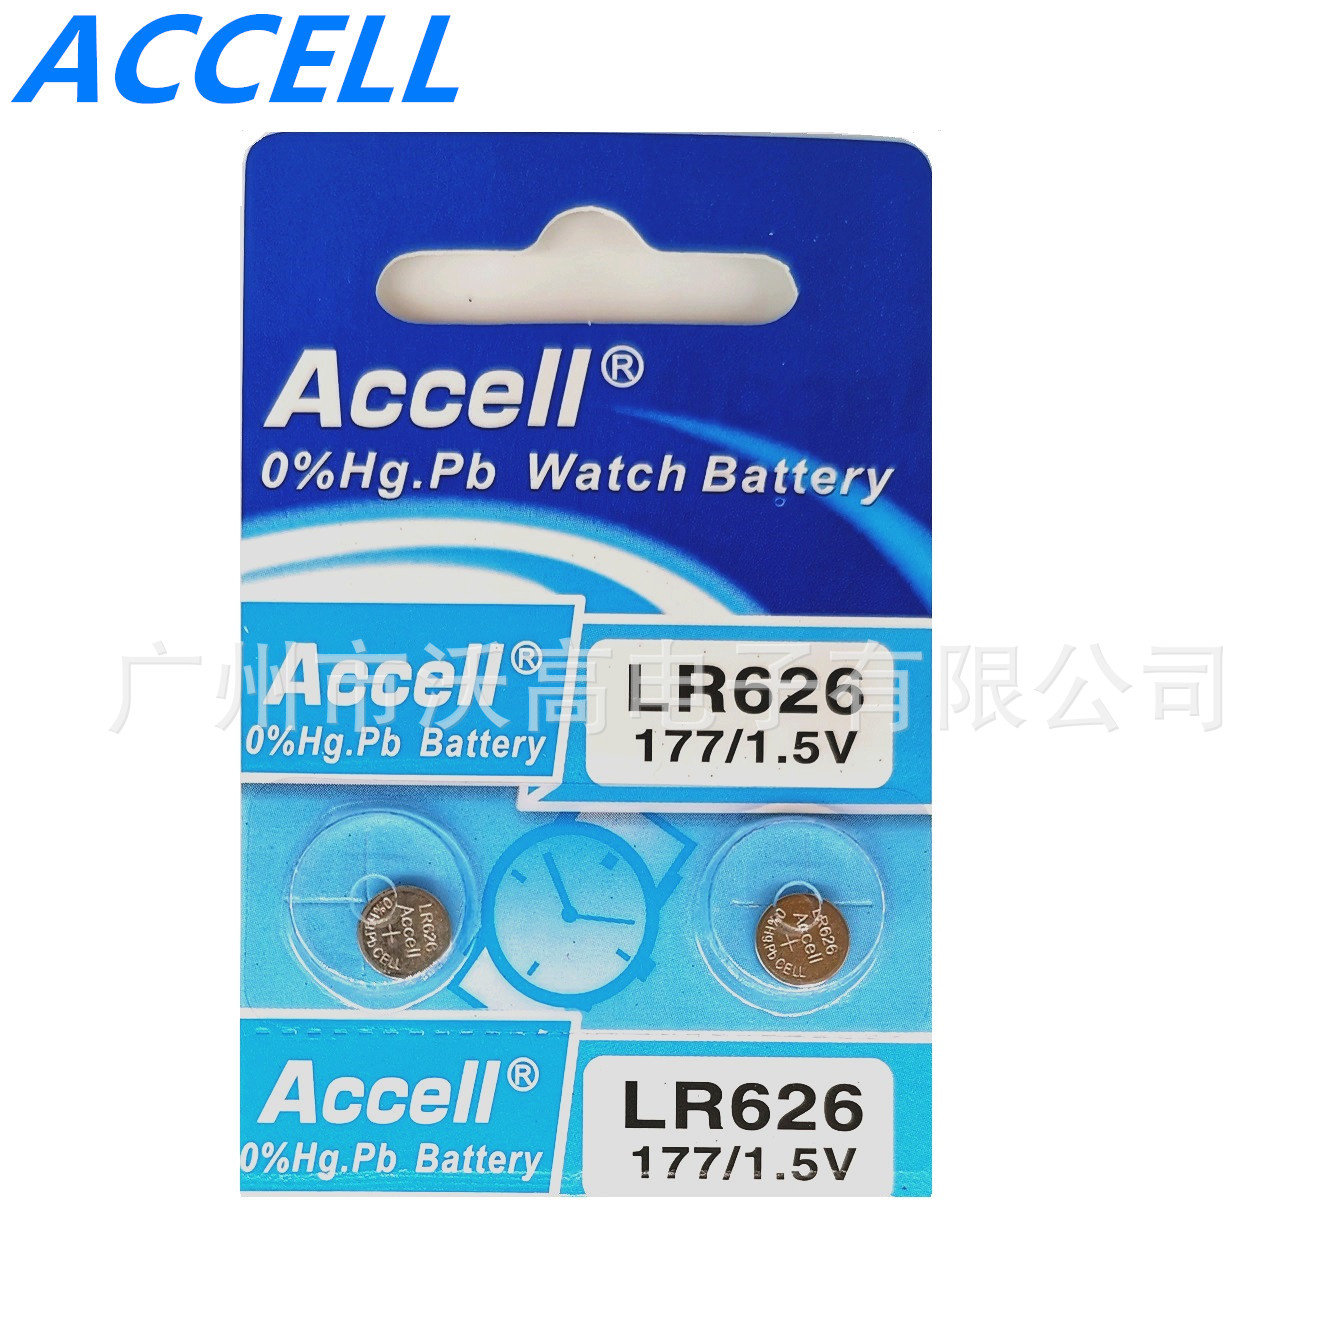 正品 Accell LR626/377 SL68 PC21 2035机芯通用 手表电池 碱性